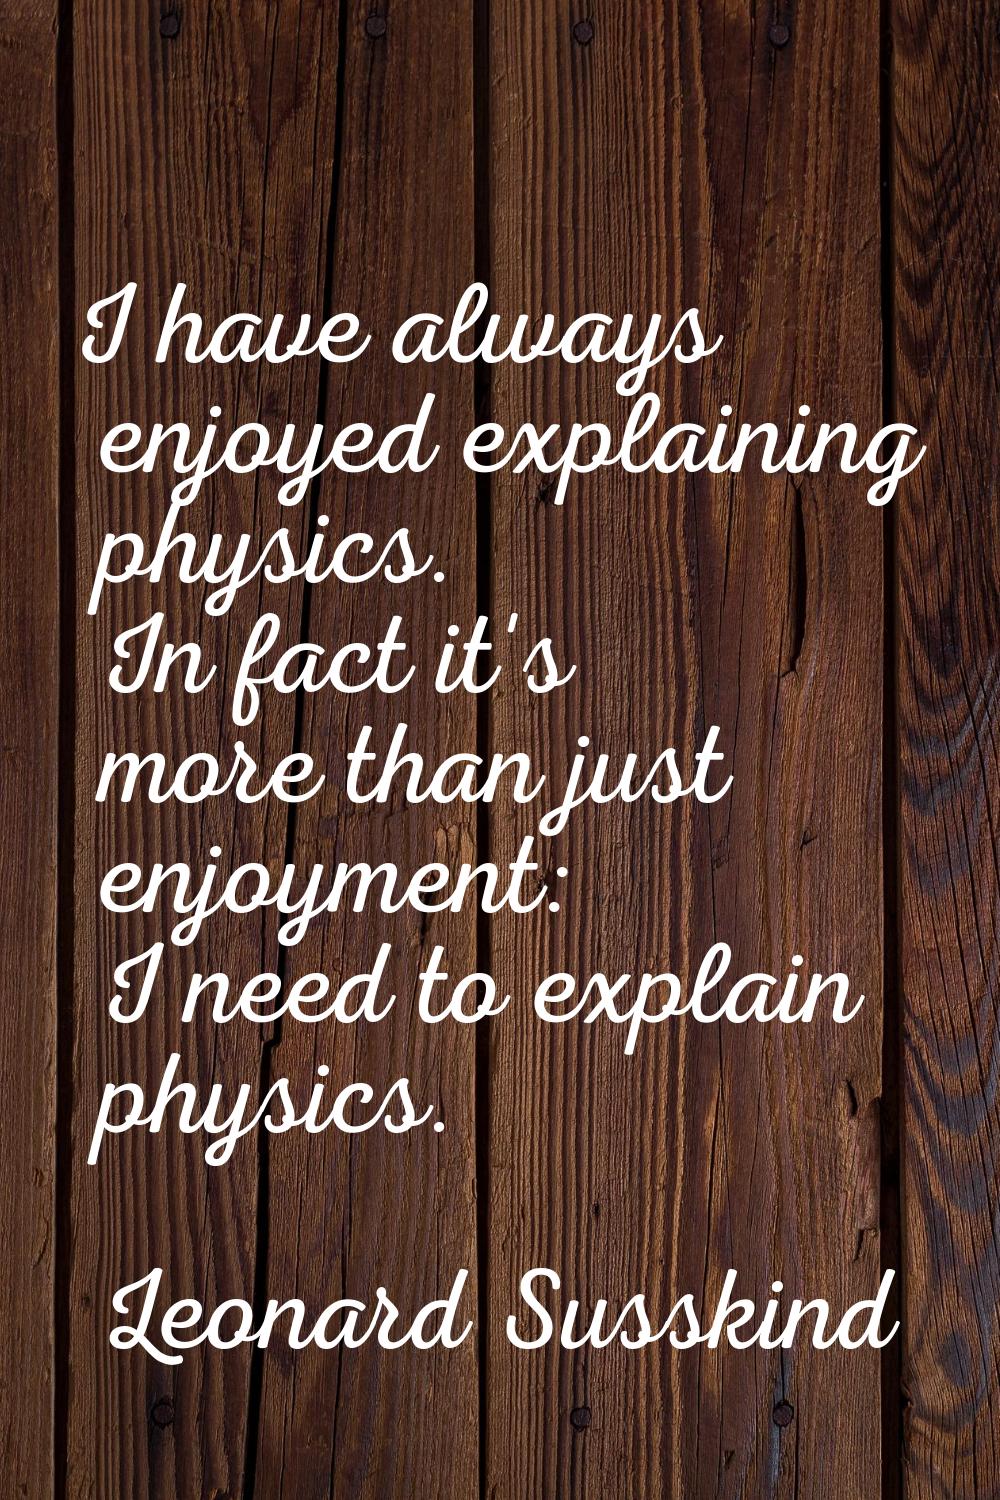 I have always enjoyed explaining physics. In fact it's more than just enjoyment: I need to explain 